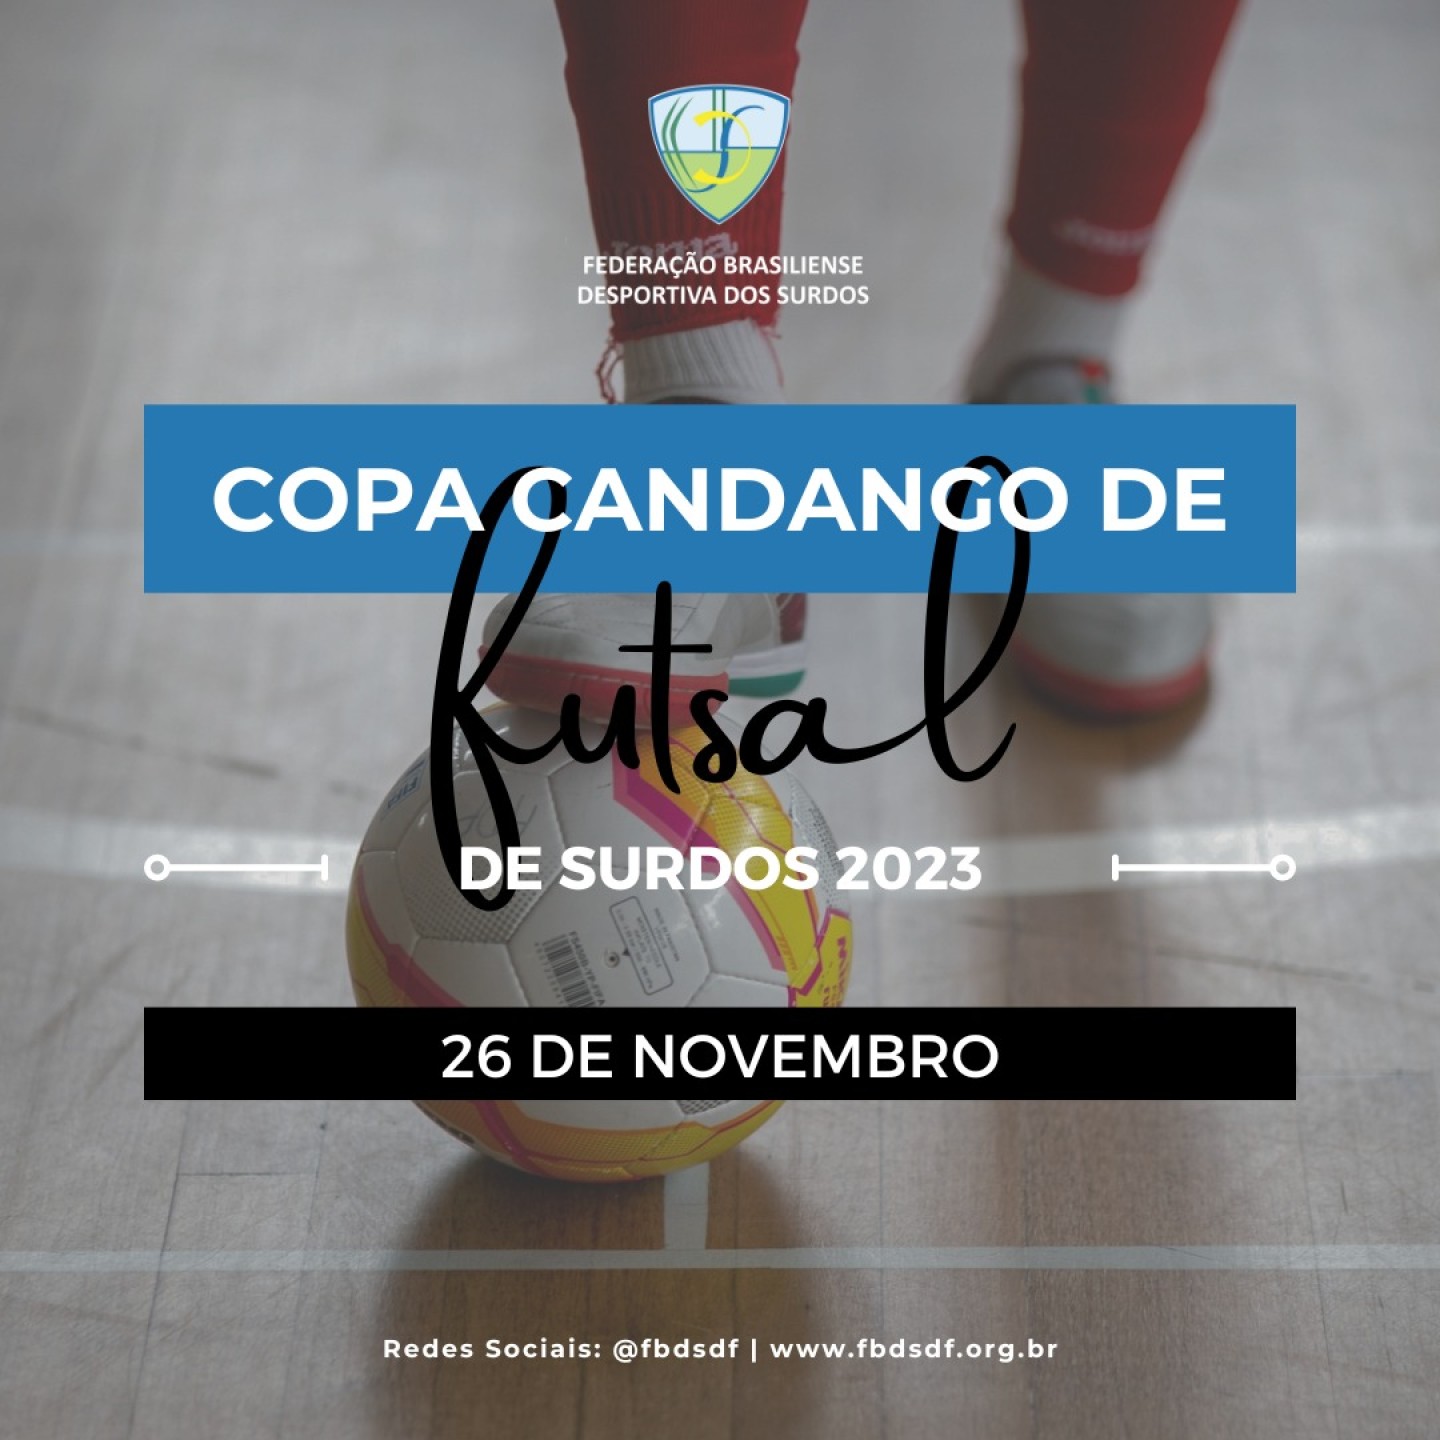 Copa Candango de Futsal 2023